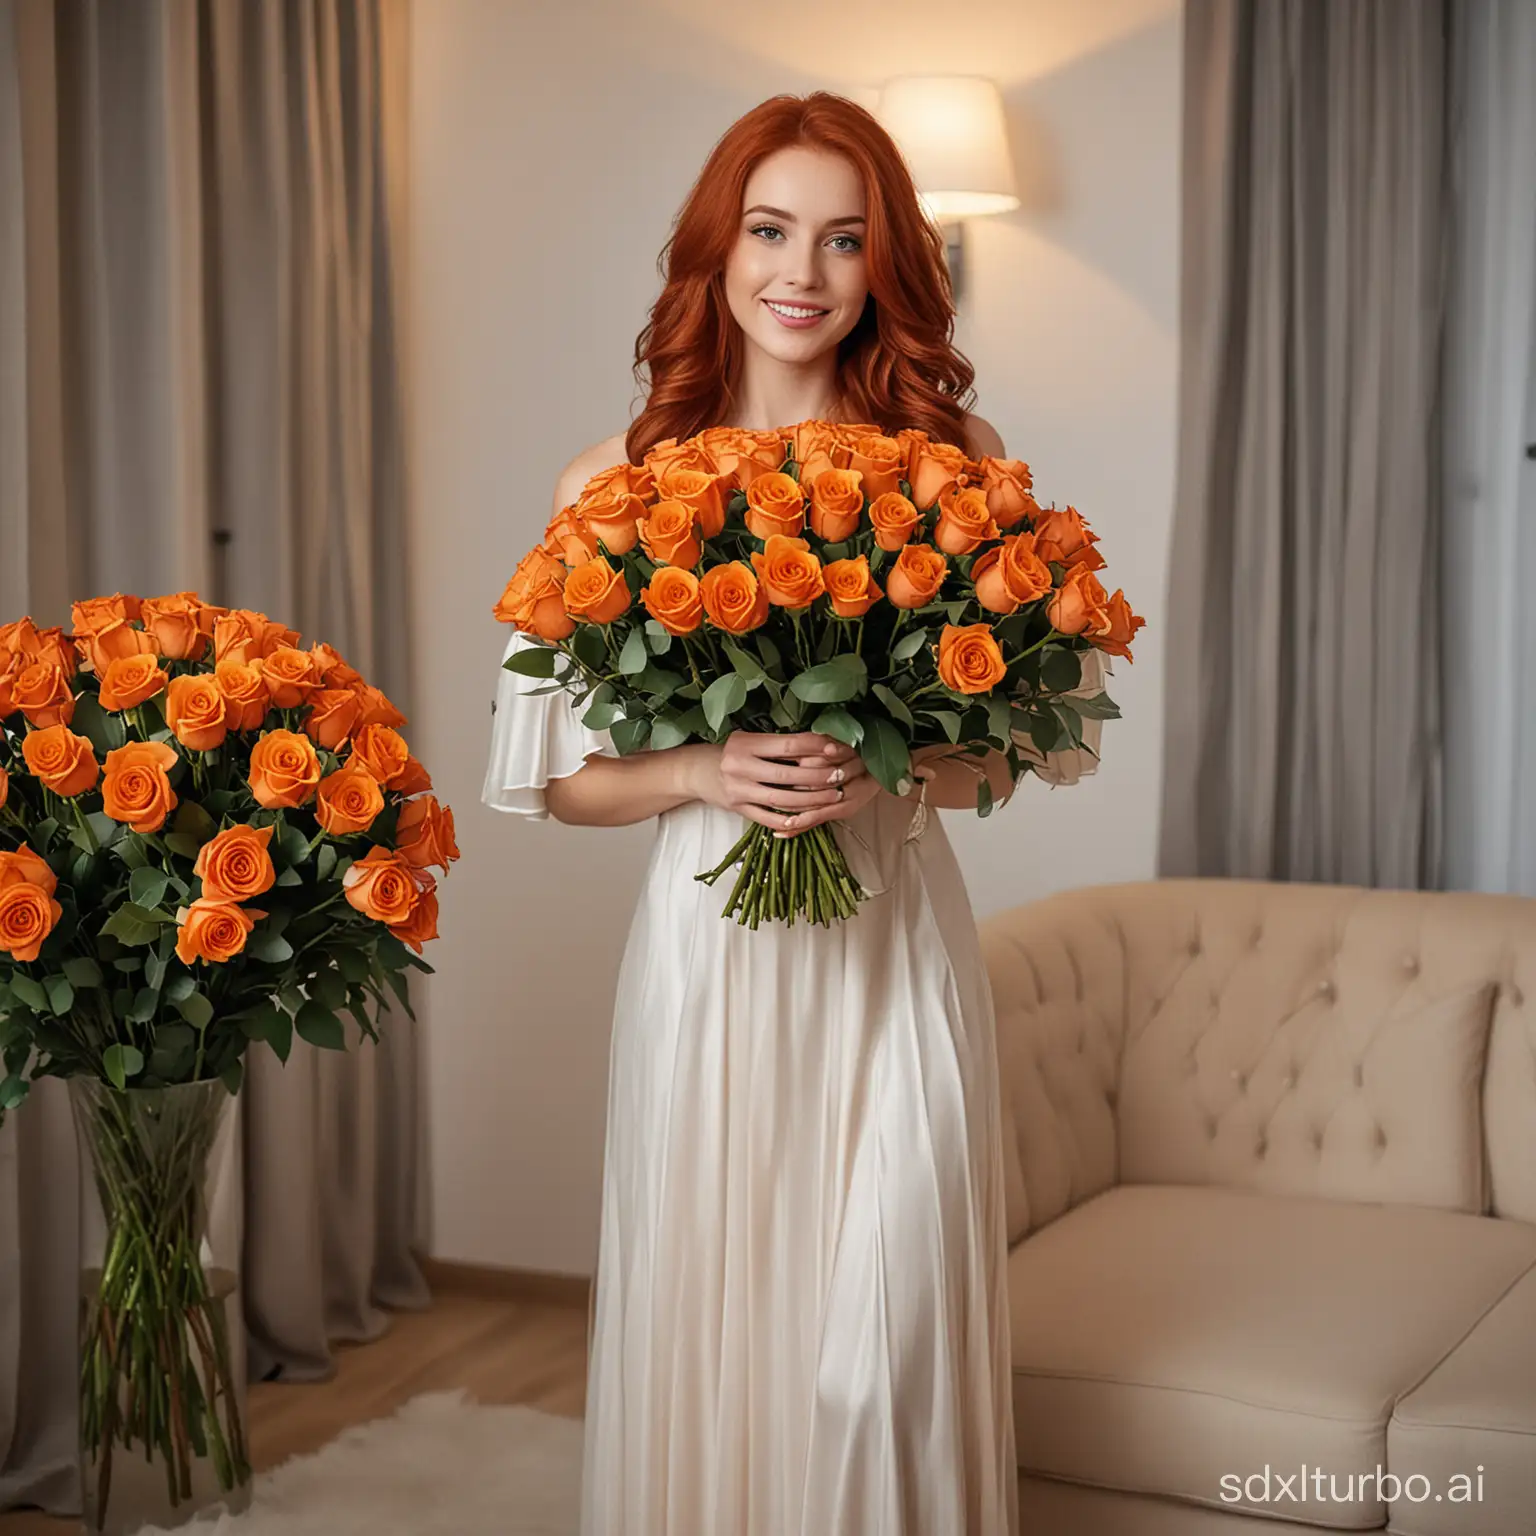 красивая Девушка в вечернем платье, с рыжими длинными волосами держит большой букет из 101 оранжевой розы, стоит в гостиной комнате с